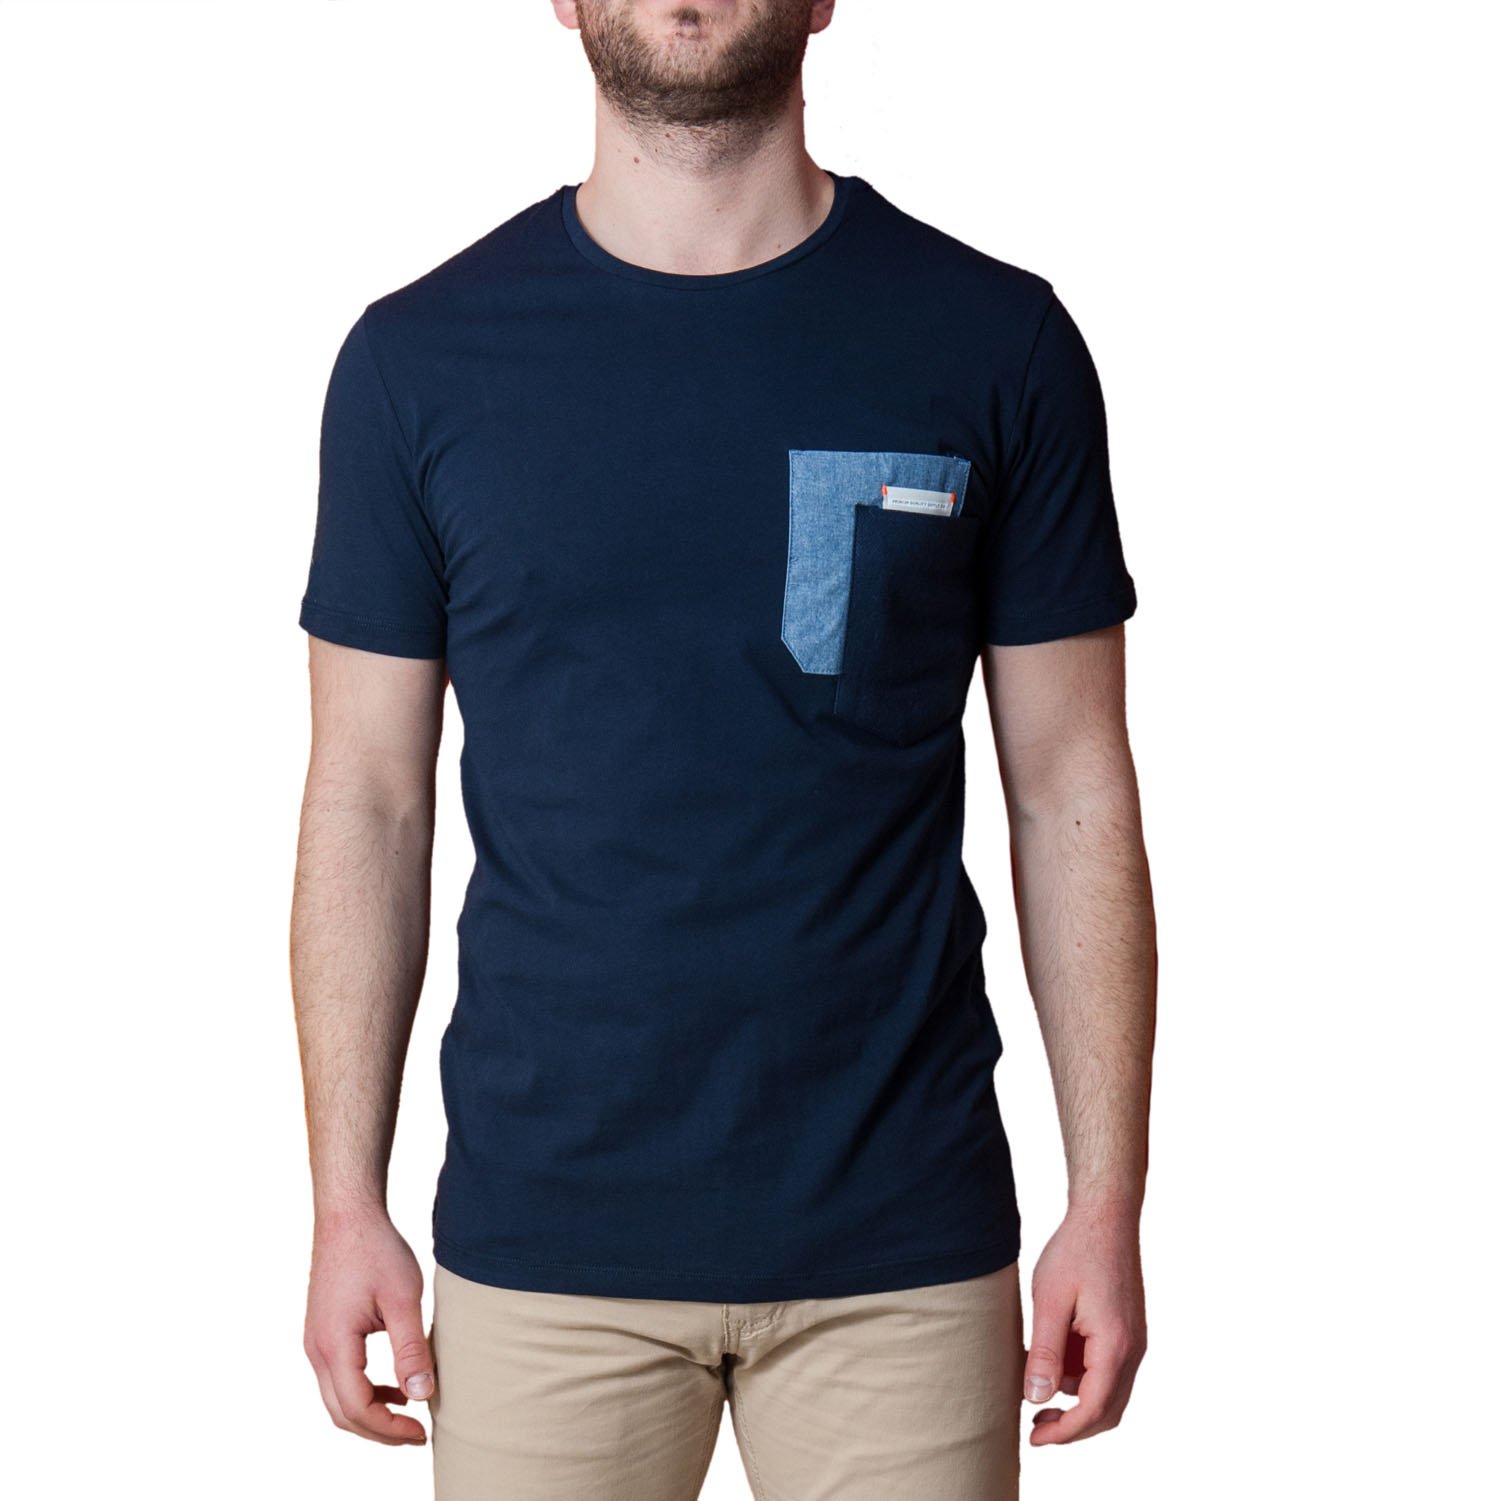 T-Shirt Uomo Blu Taschino Maglia Manica Corta Elegante Maglietta Casual  Cotone | eBay